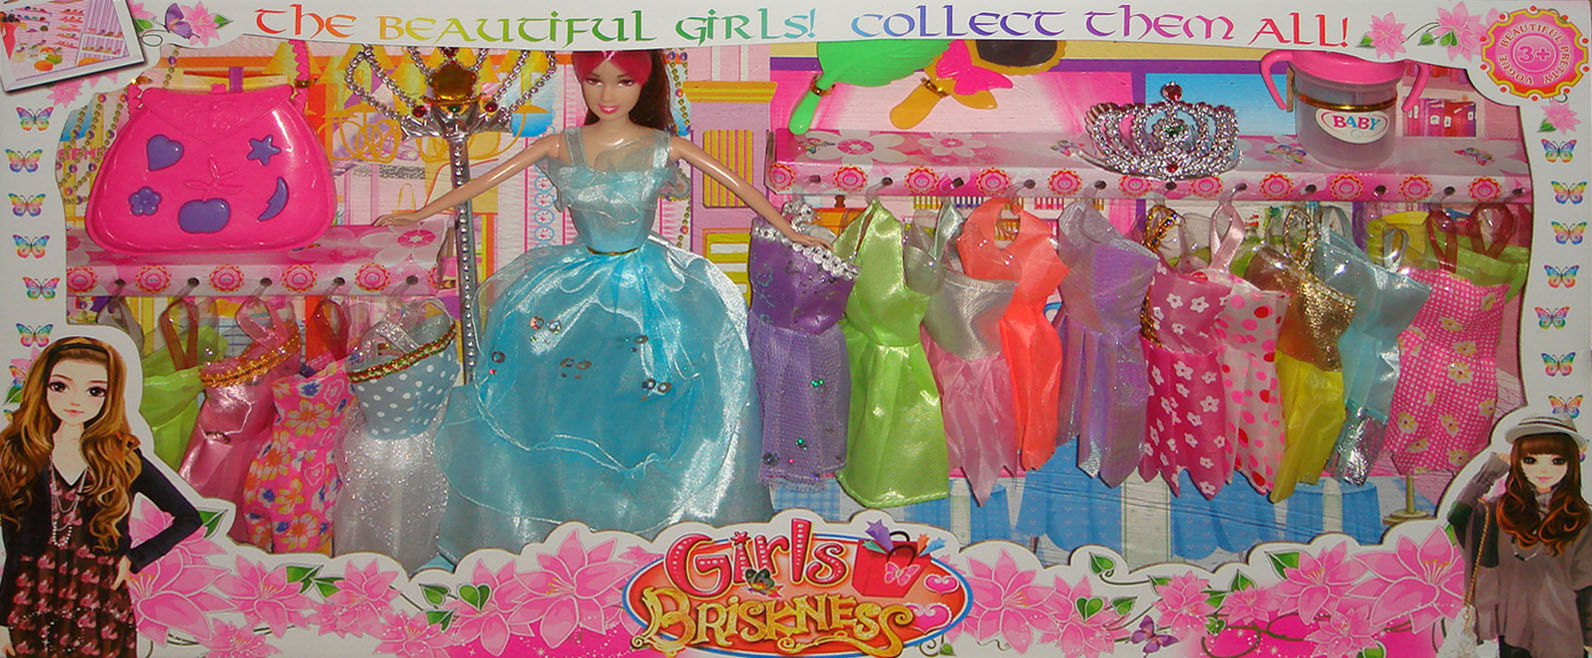 芭芘娃娃,16套衣服换装娃娃,生日礼物,女孩子玩具